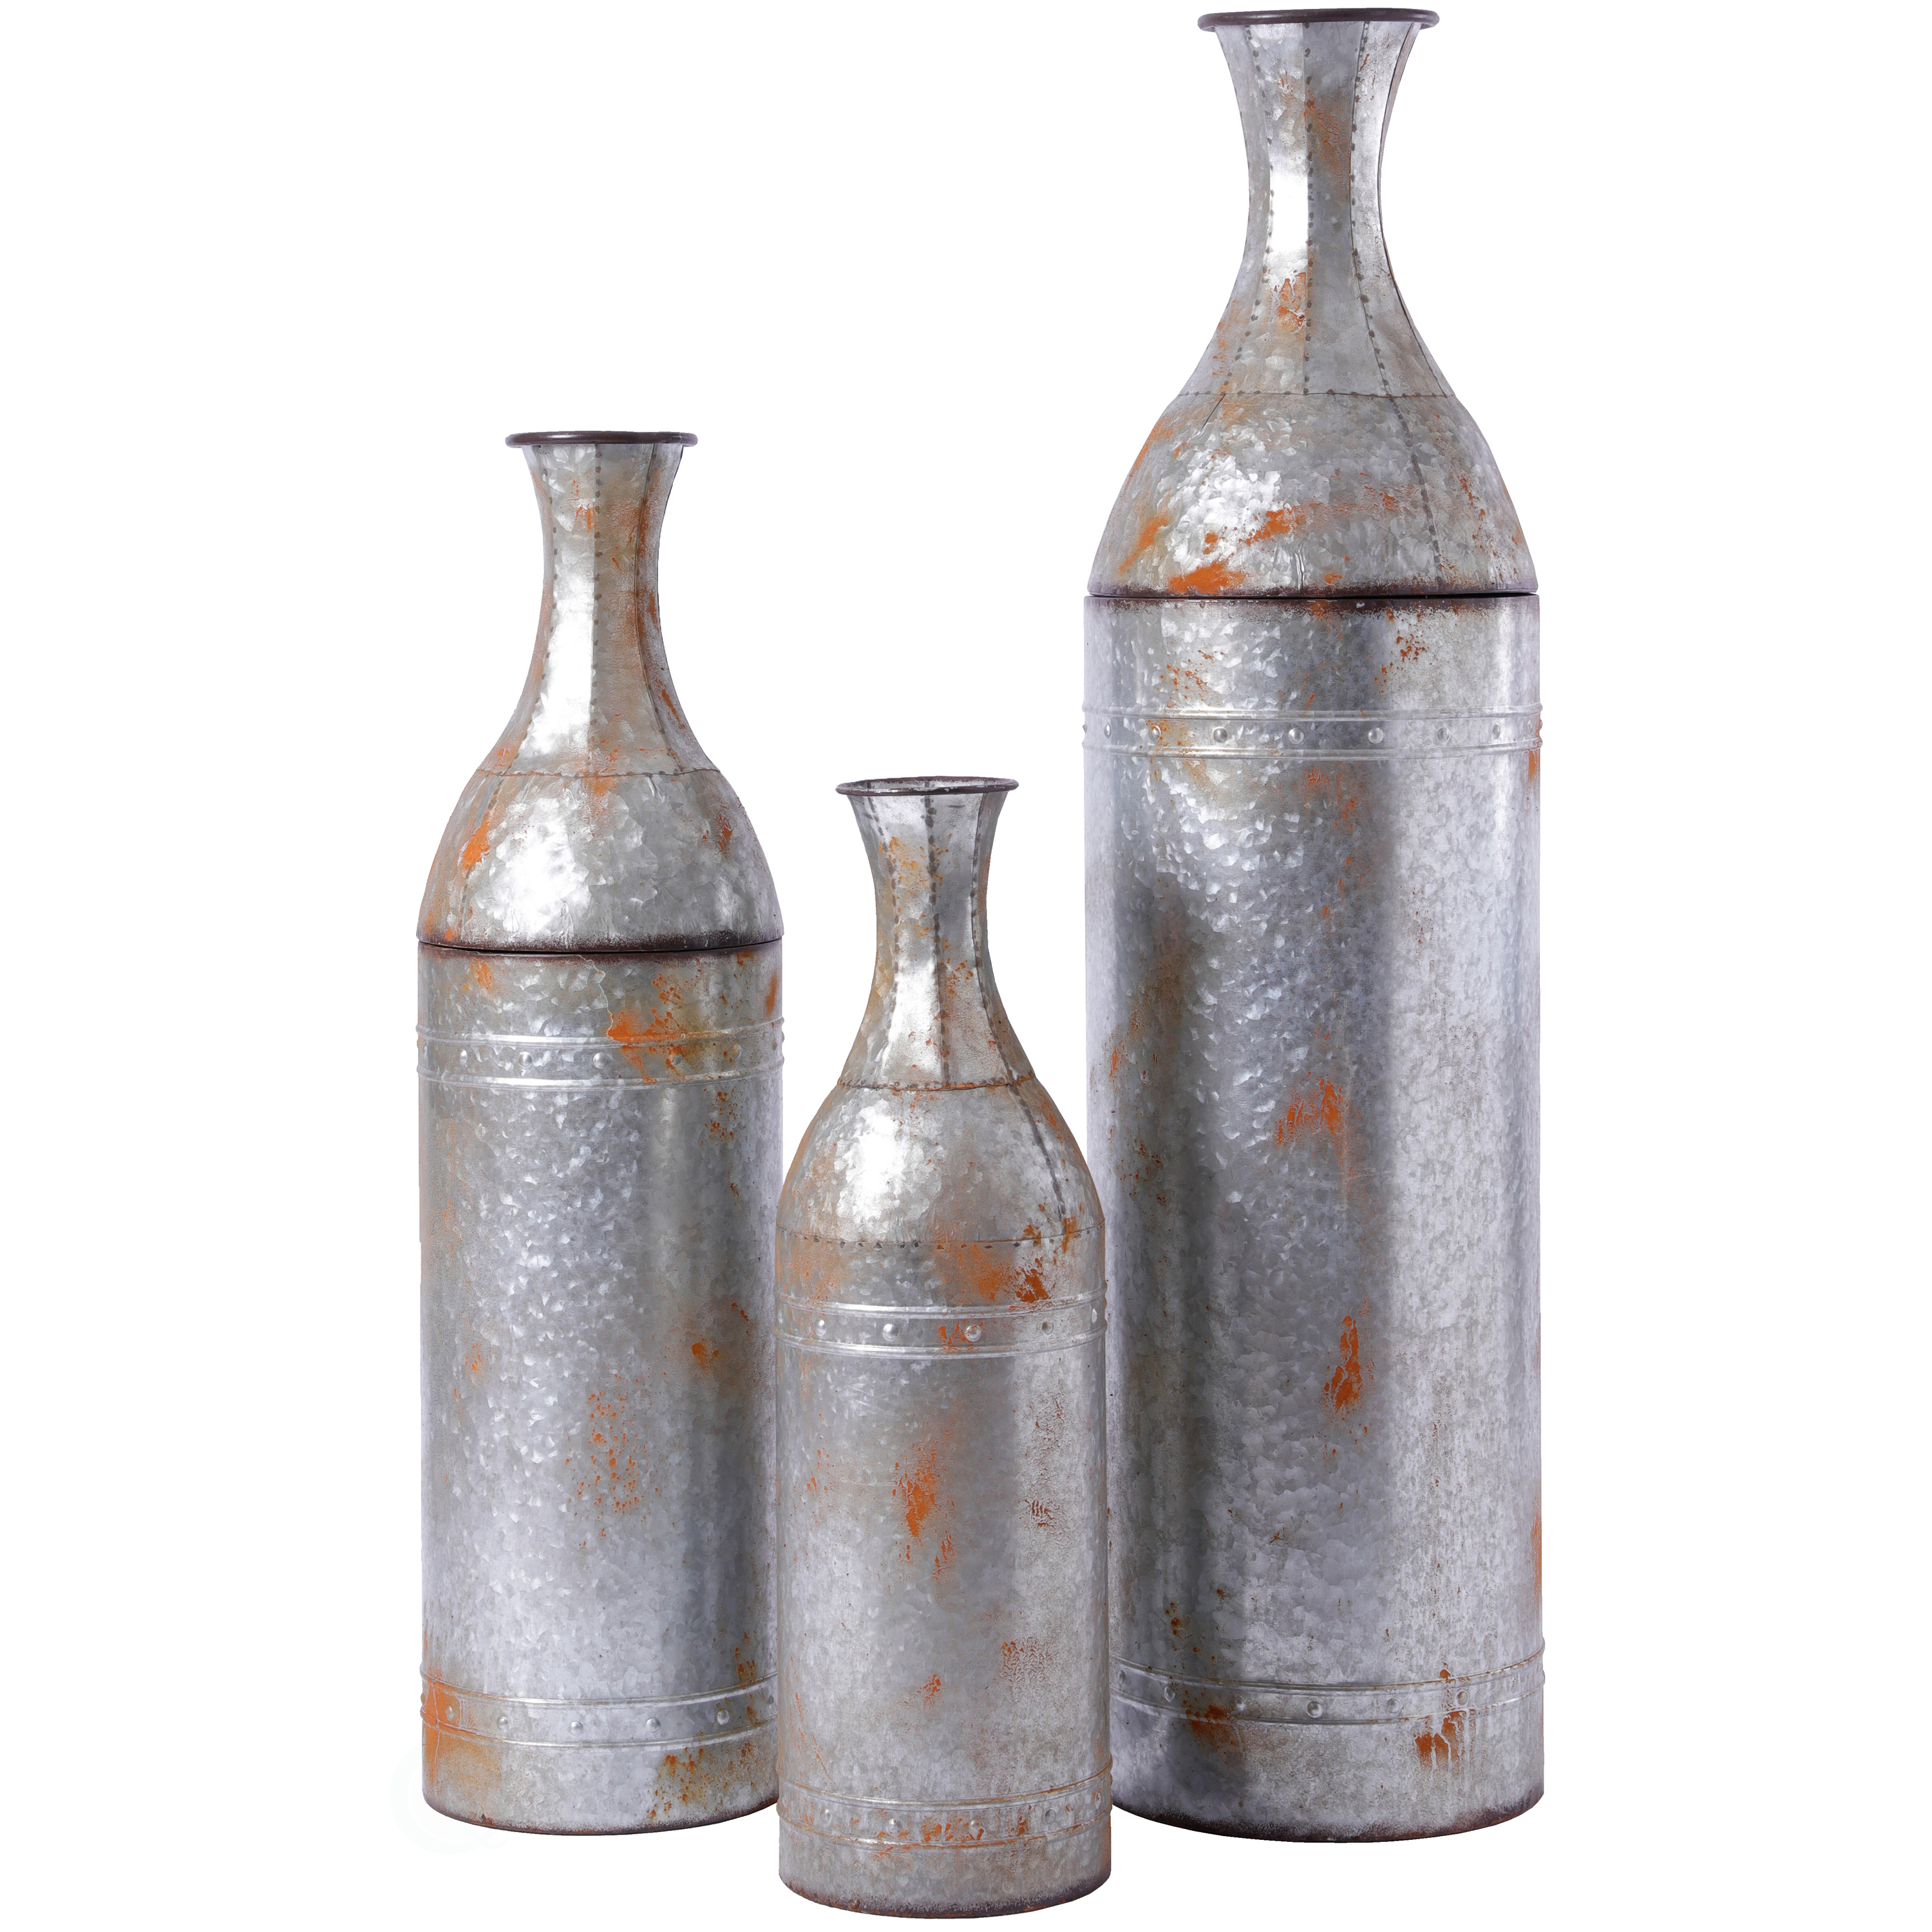 Rustic Farmhouse Style Galvanized Metal Floor Vase Decoration - Medium